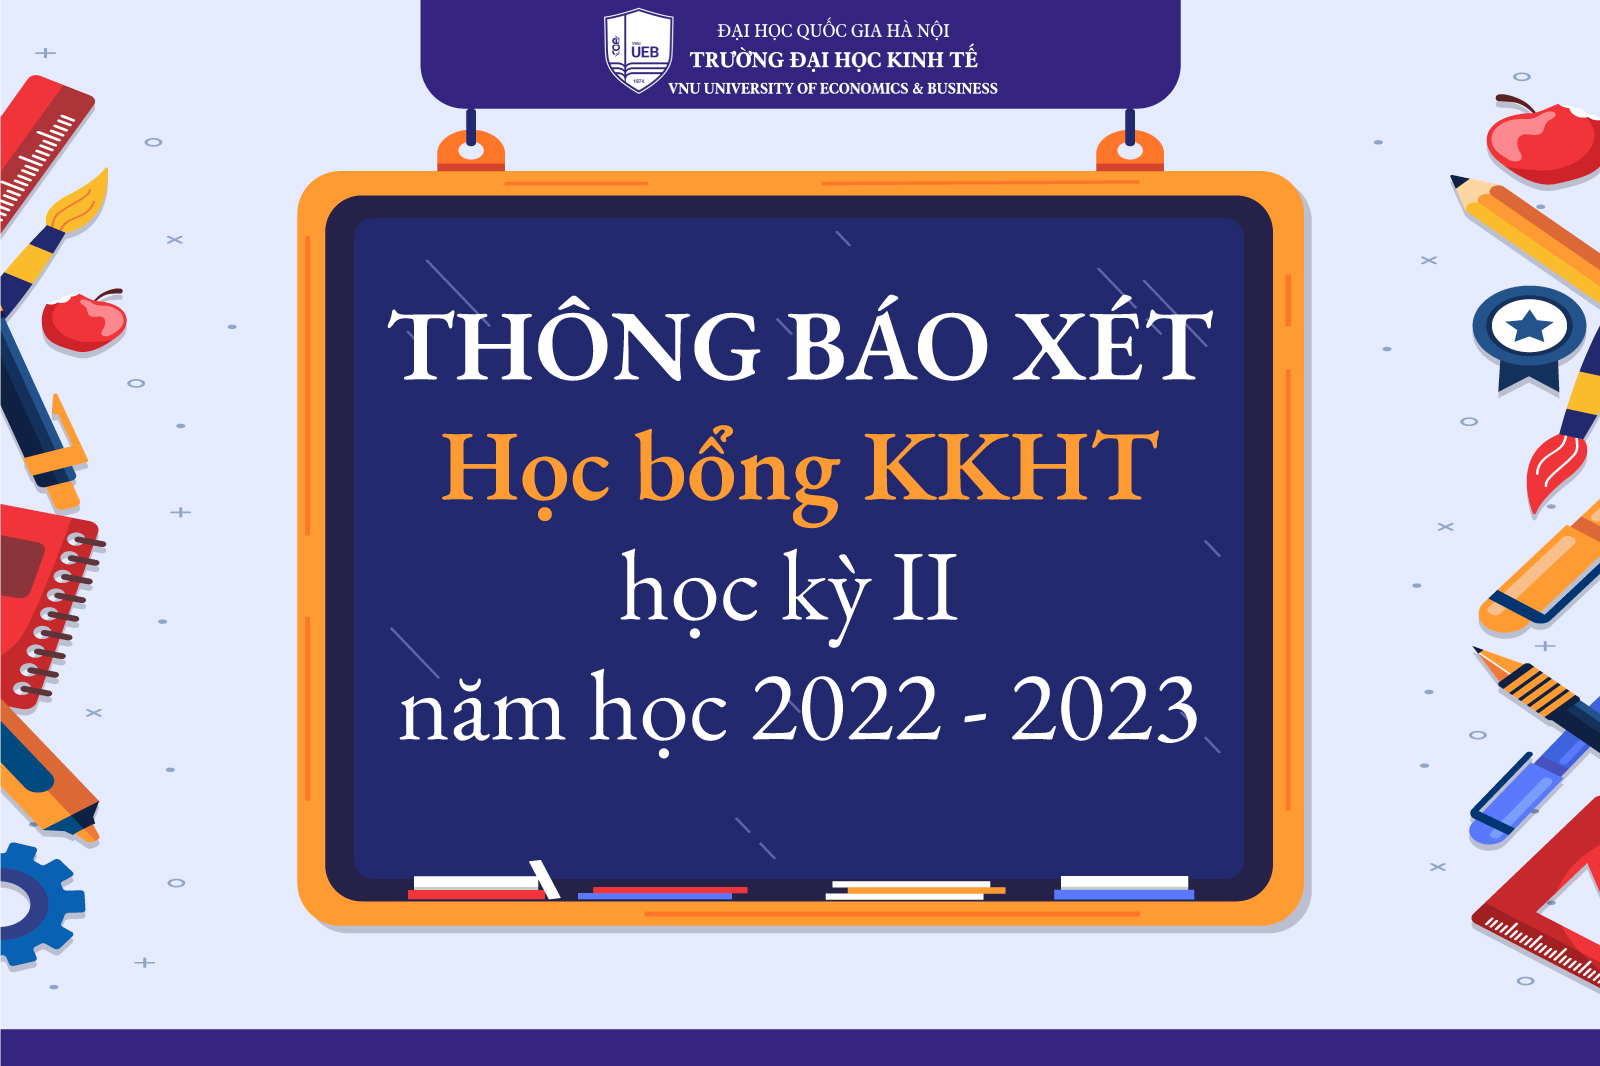 Thông báo hướng dẫn xét học bổng KKHT cho sinh viên chính quy học kỳ II năm học 2022 - 2023